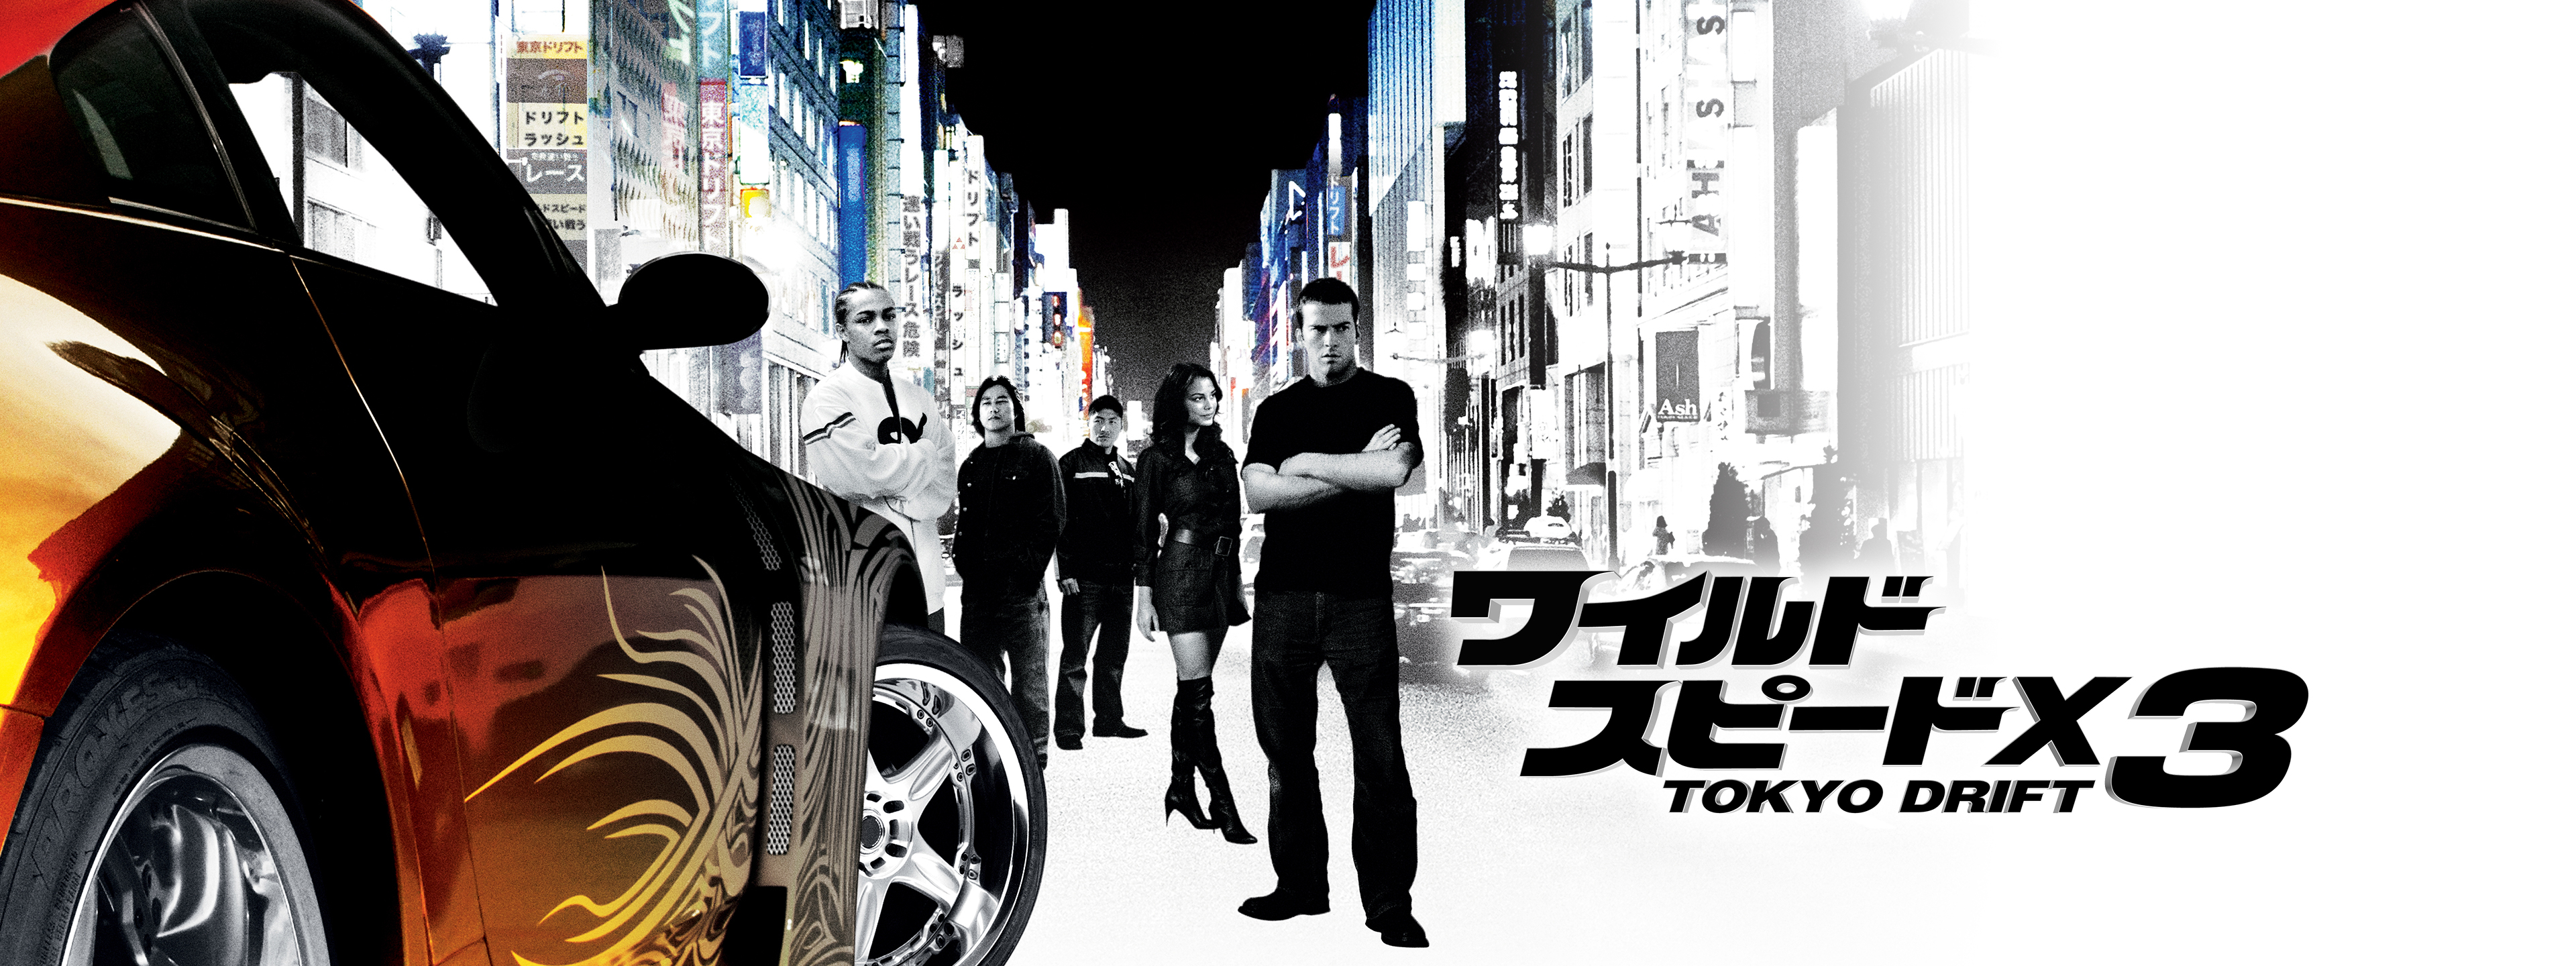 ワイルド・スピードX3 TOKYO DRIFT | Hulu(フールー)